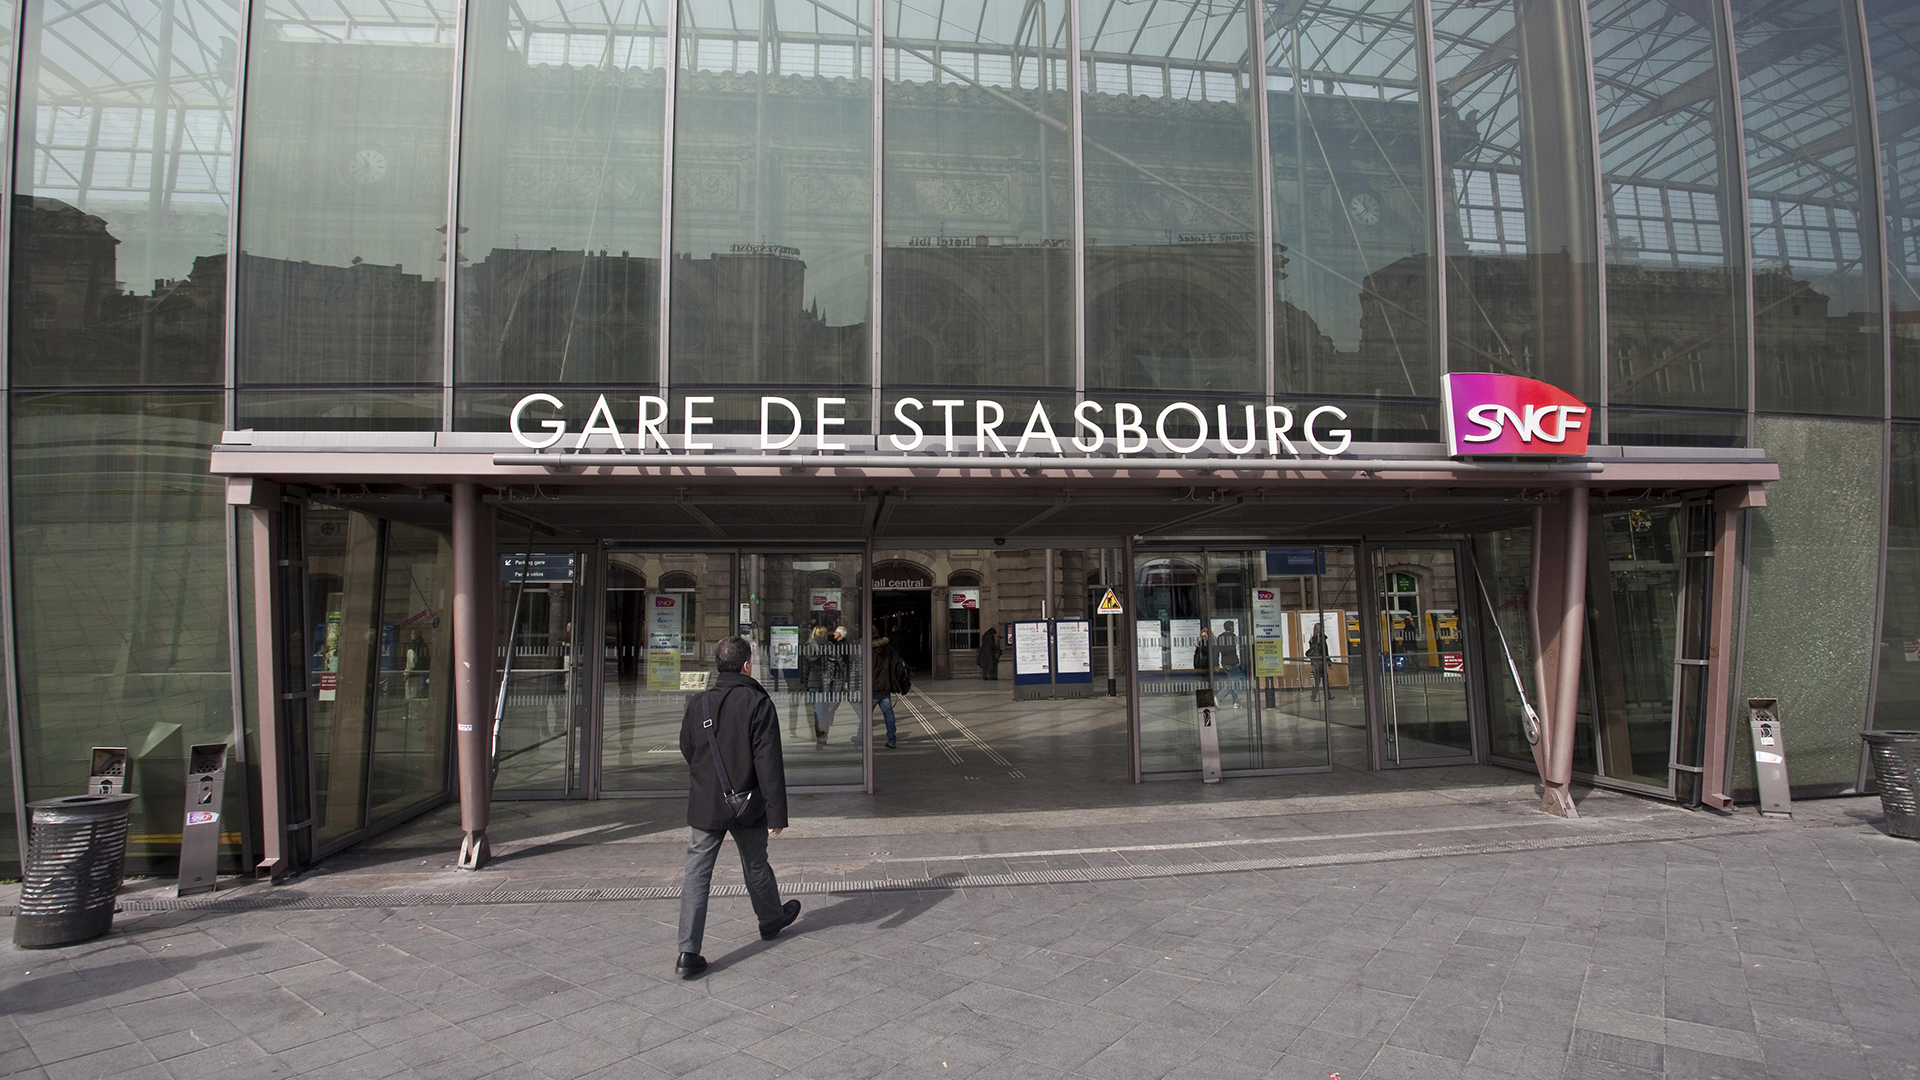 Bahnhofsgebäude in Straßburg | picture alliance / imageBROKER